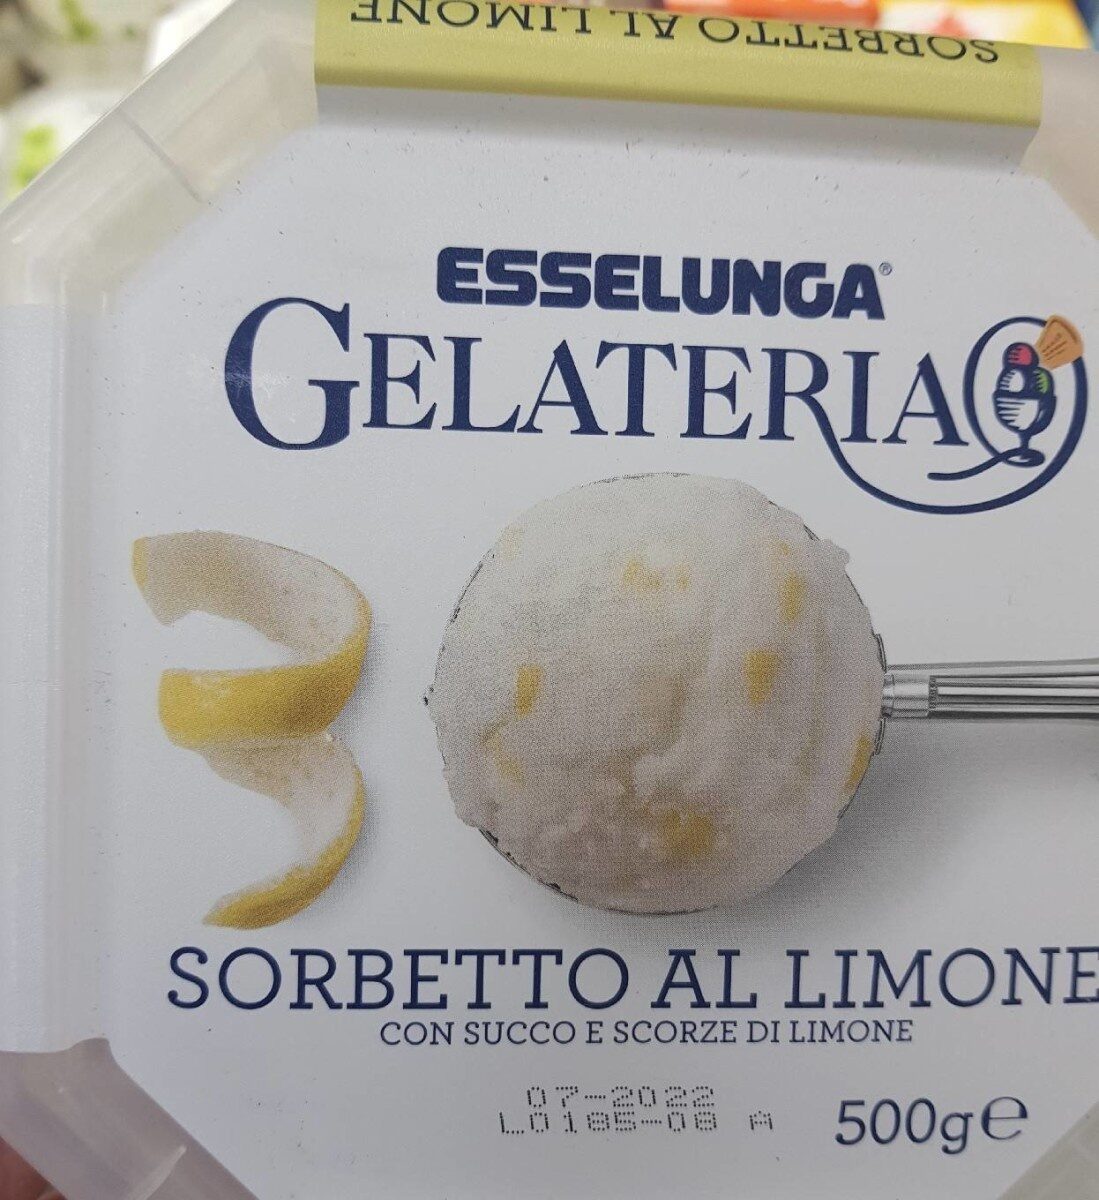 Sorbetto al limone - Prodotto - it